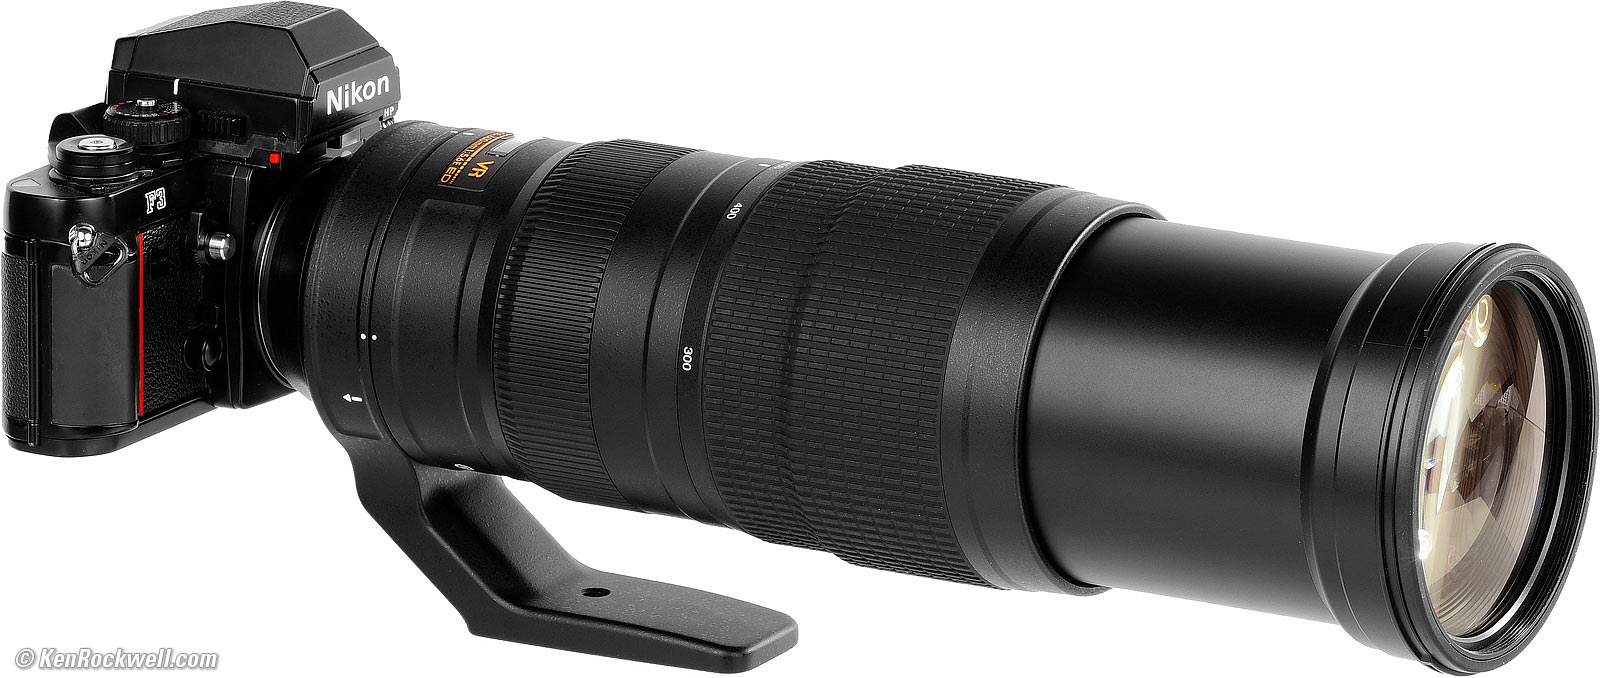 Nikon 200-500mm VR Review